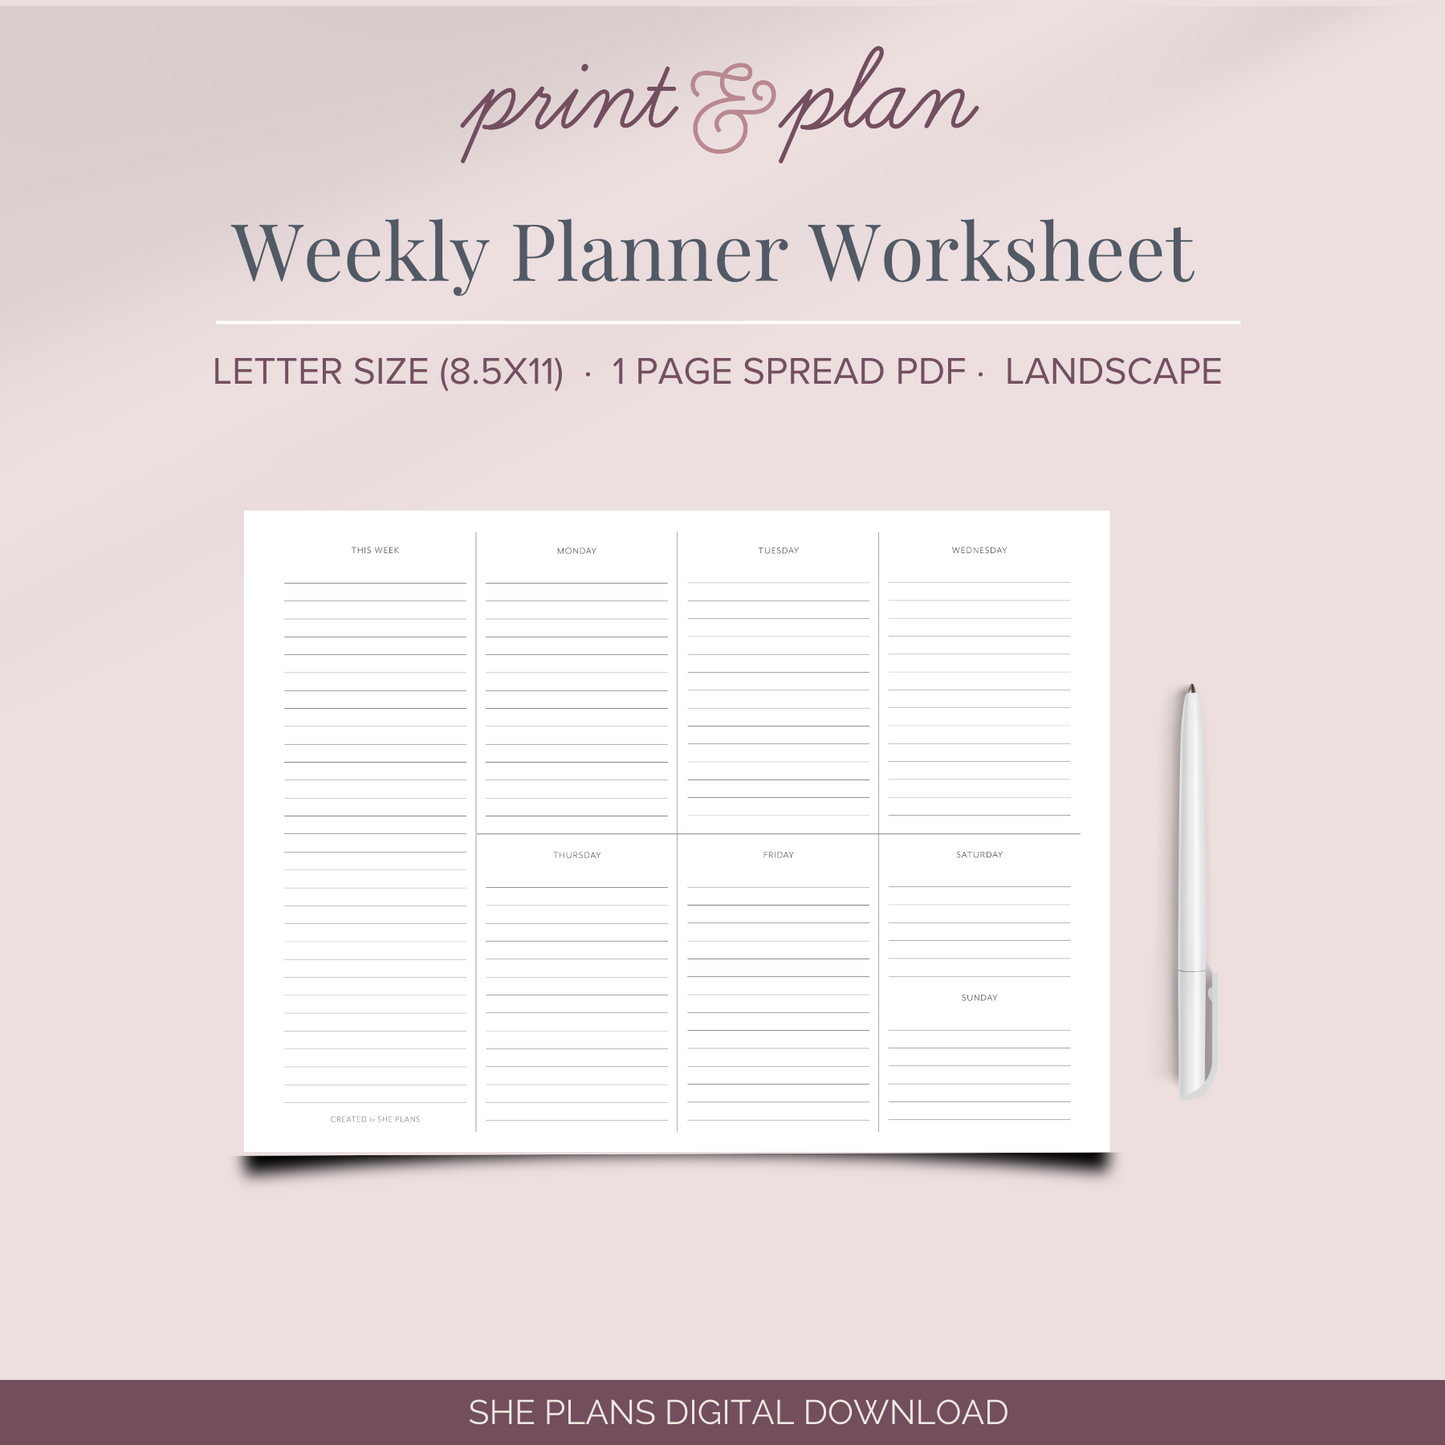 Weekly Planner Worksheet Printable